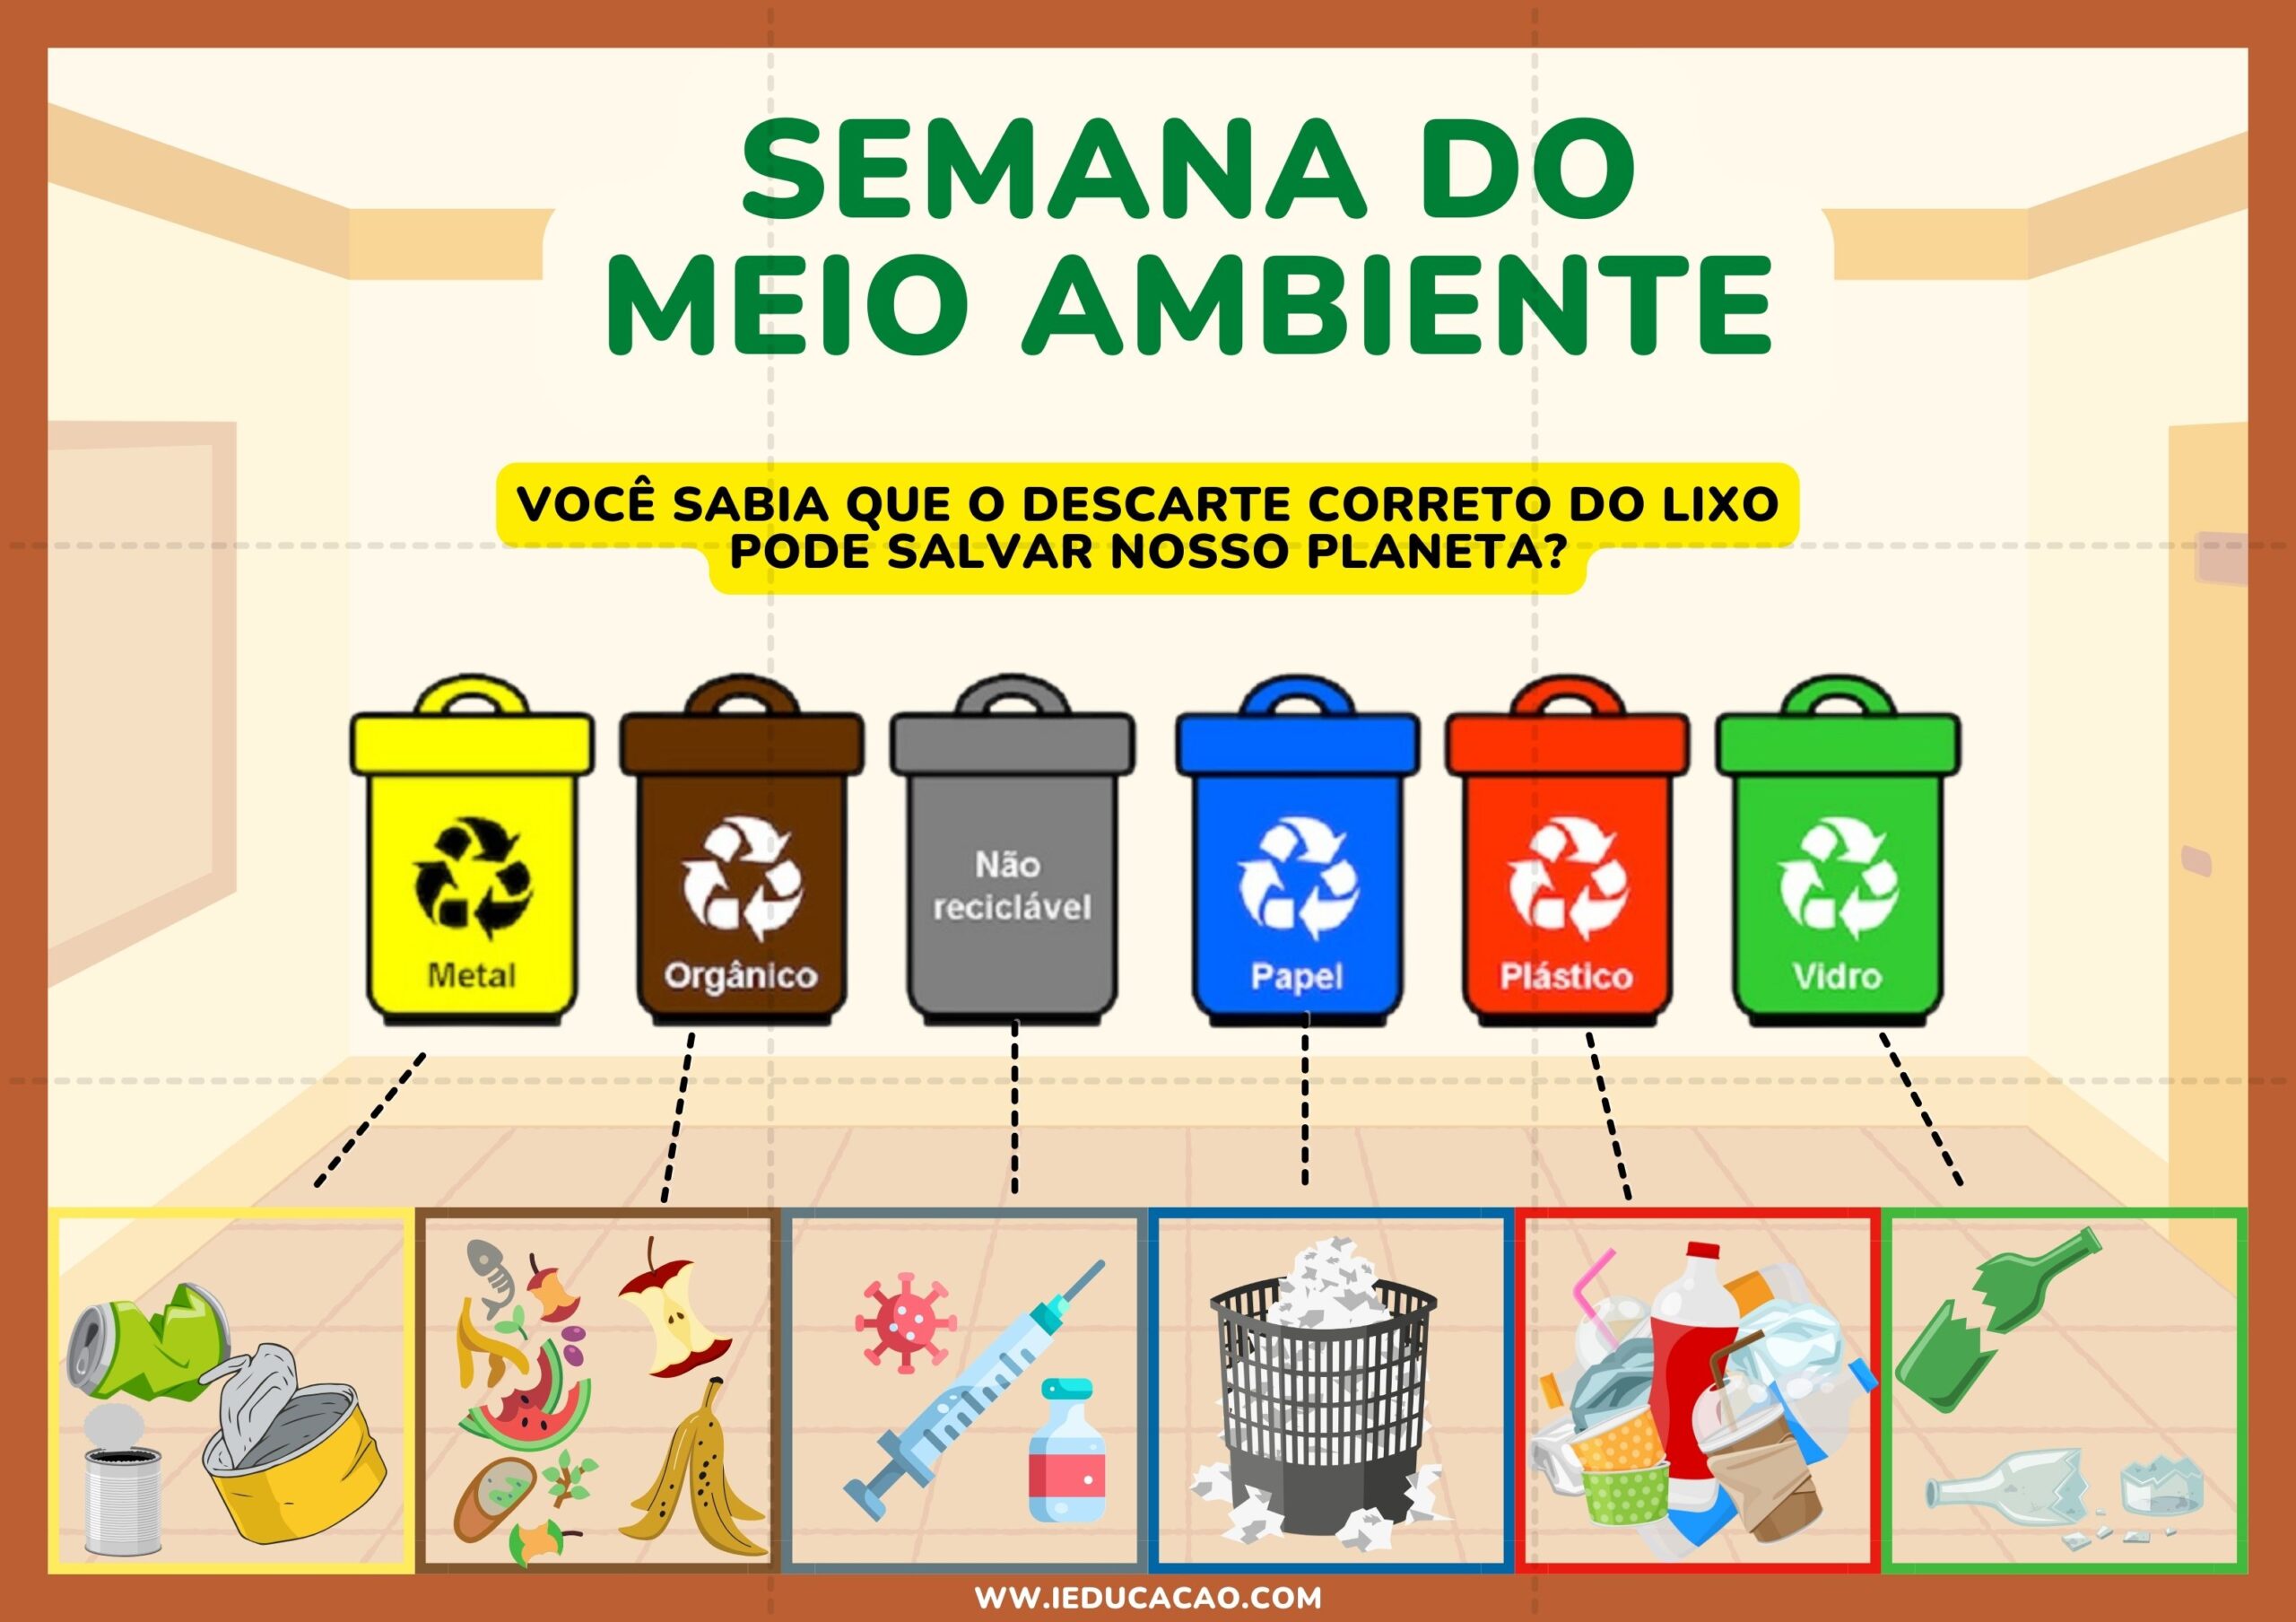 Painel do Meio Ambiente sobre reciclagem e coleta seletiva para semana do meio ambiente.